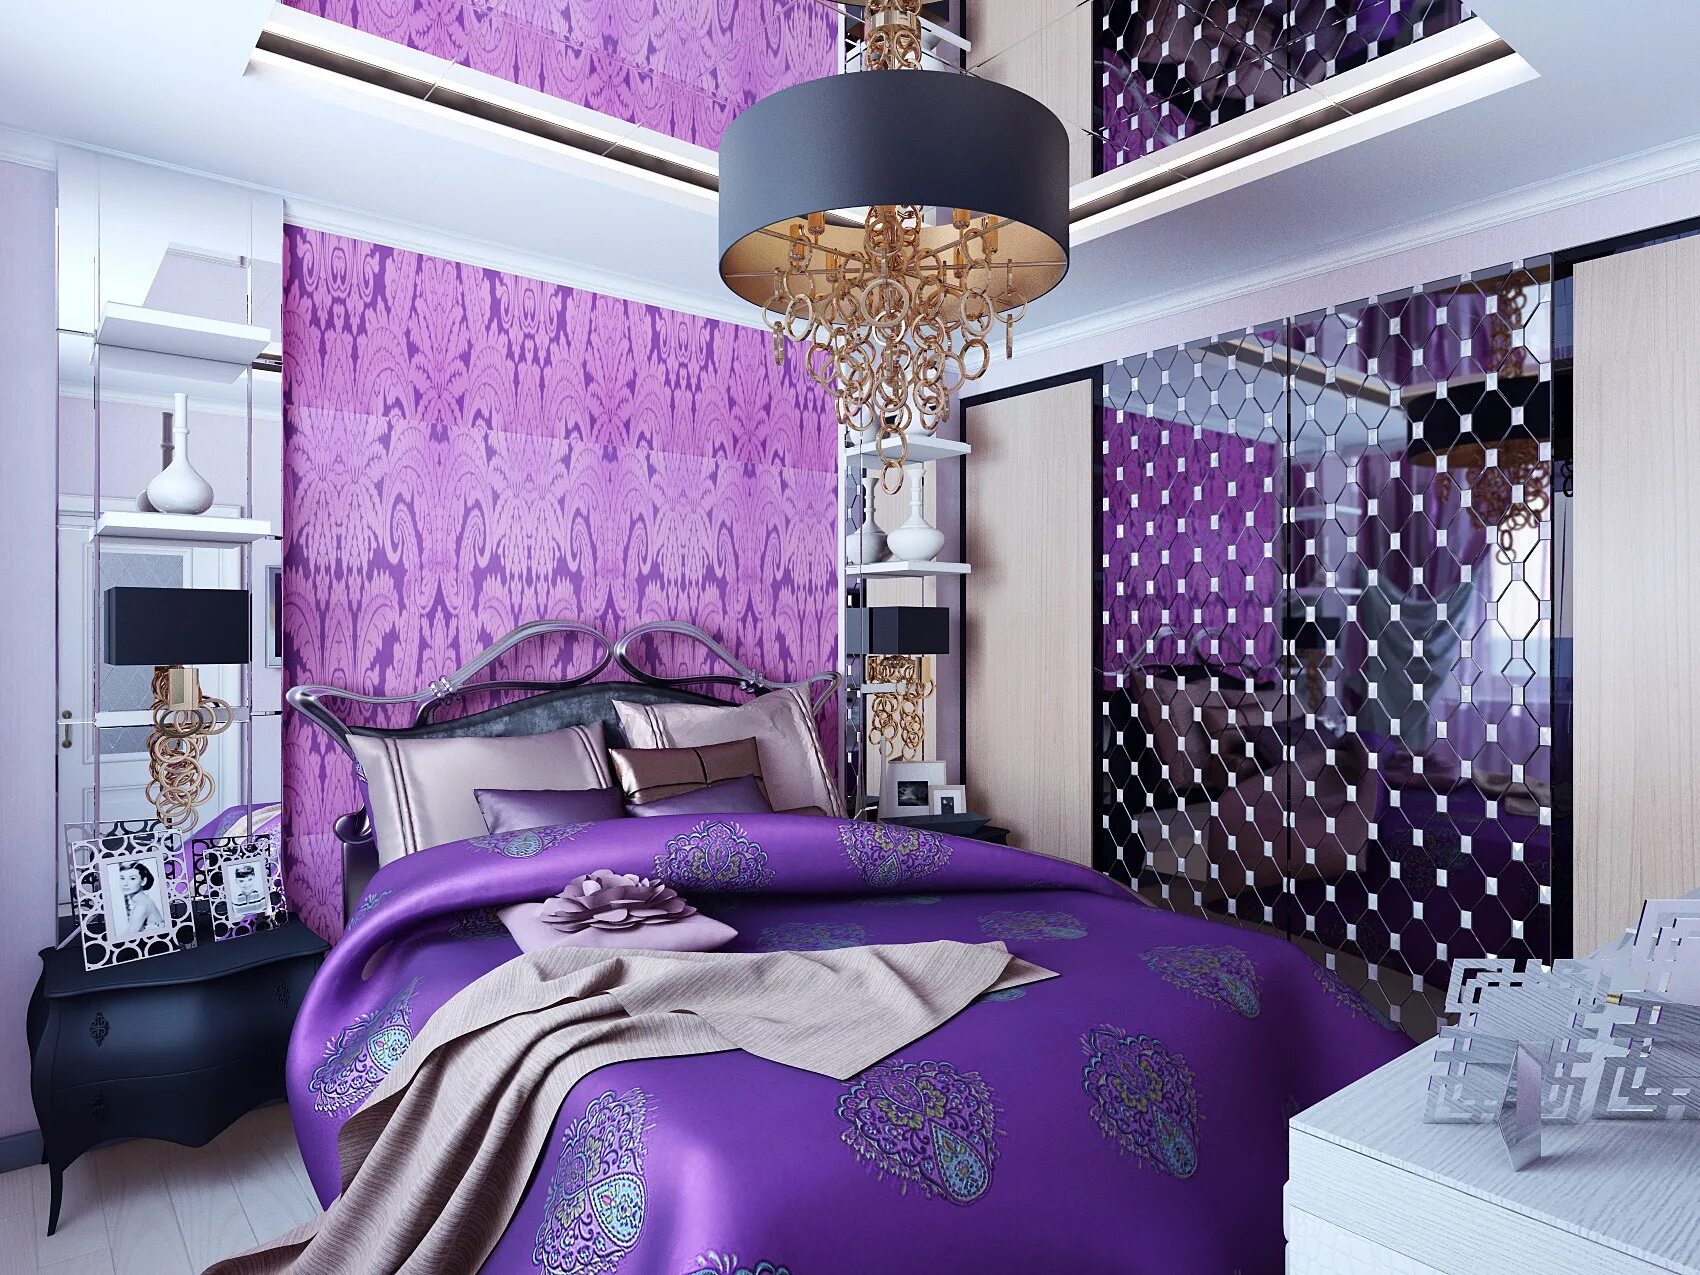 Выделение фиолетового цвета. Сиреневая спальня. Спальня в фиолетовом цвете. Спальня в фиолетовых тонах. Спальня в сиреневых тонах.